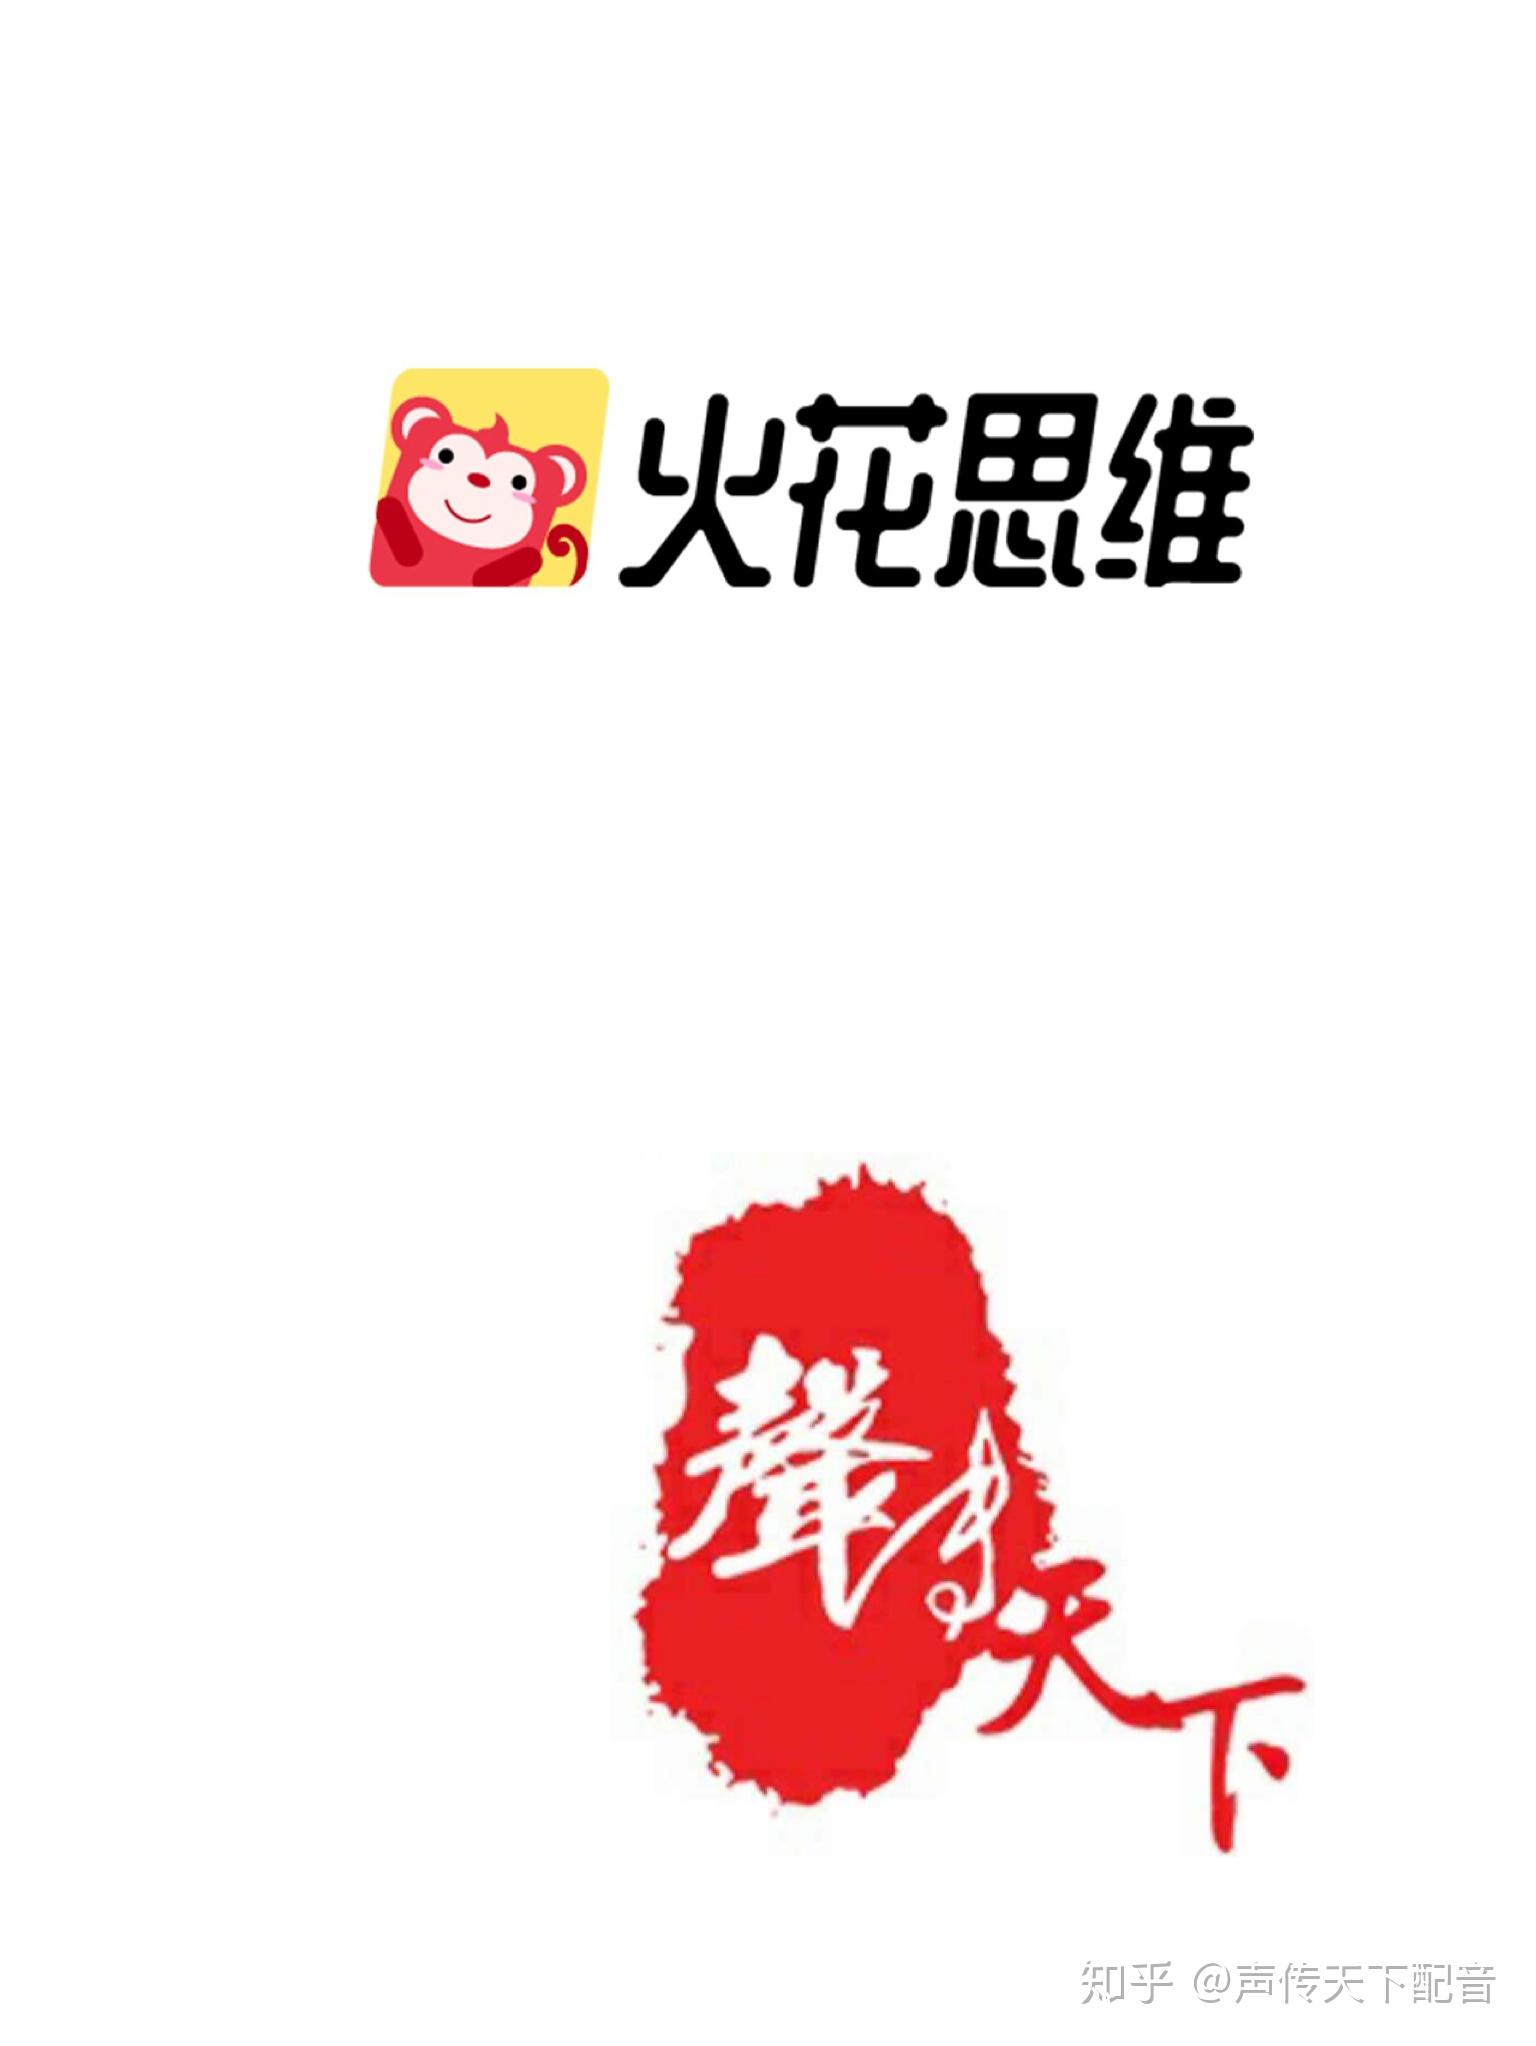 火花思维logo图片